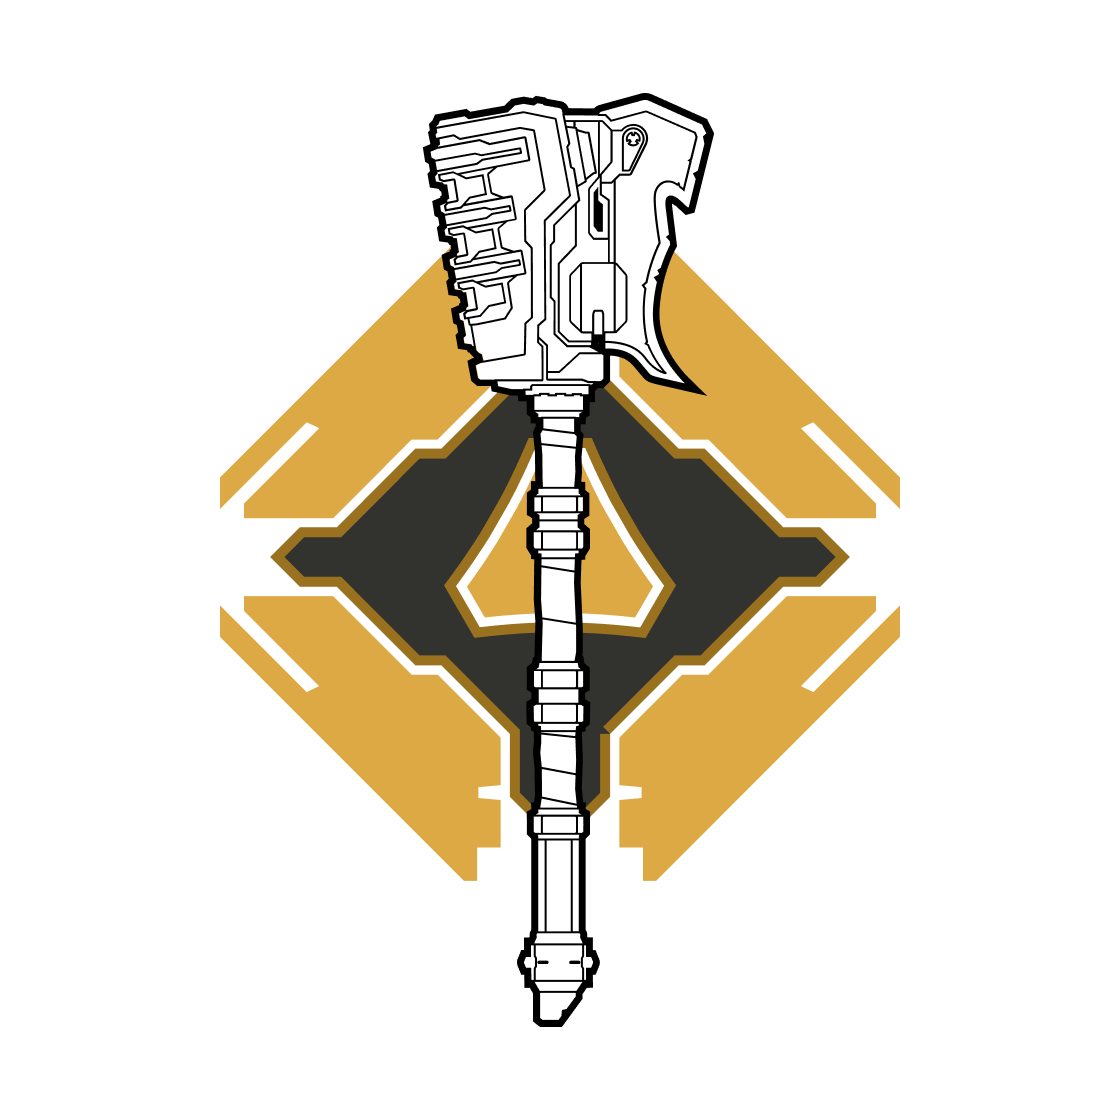 Juror Number 8 Emblem